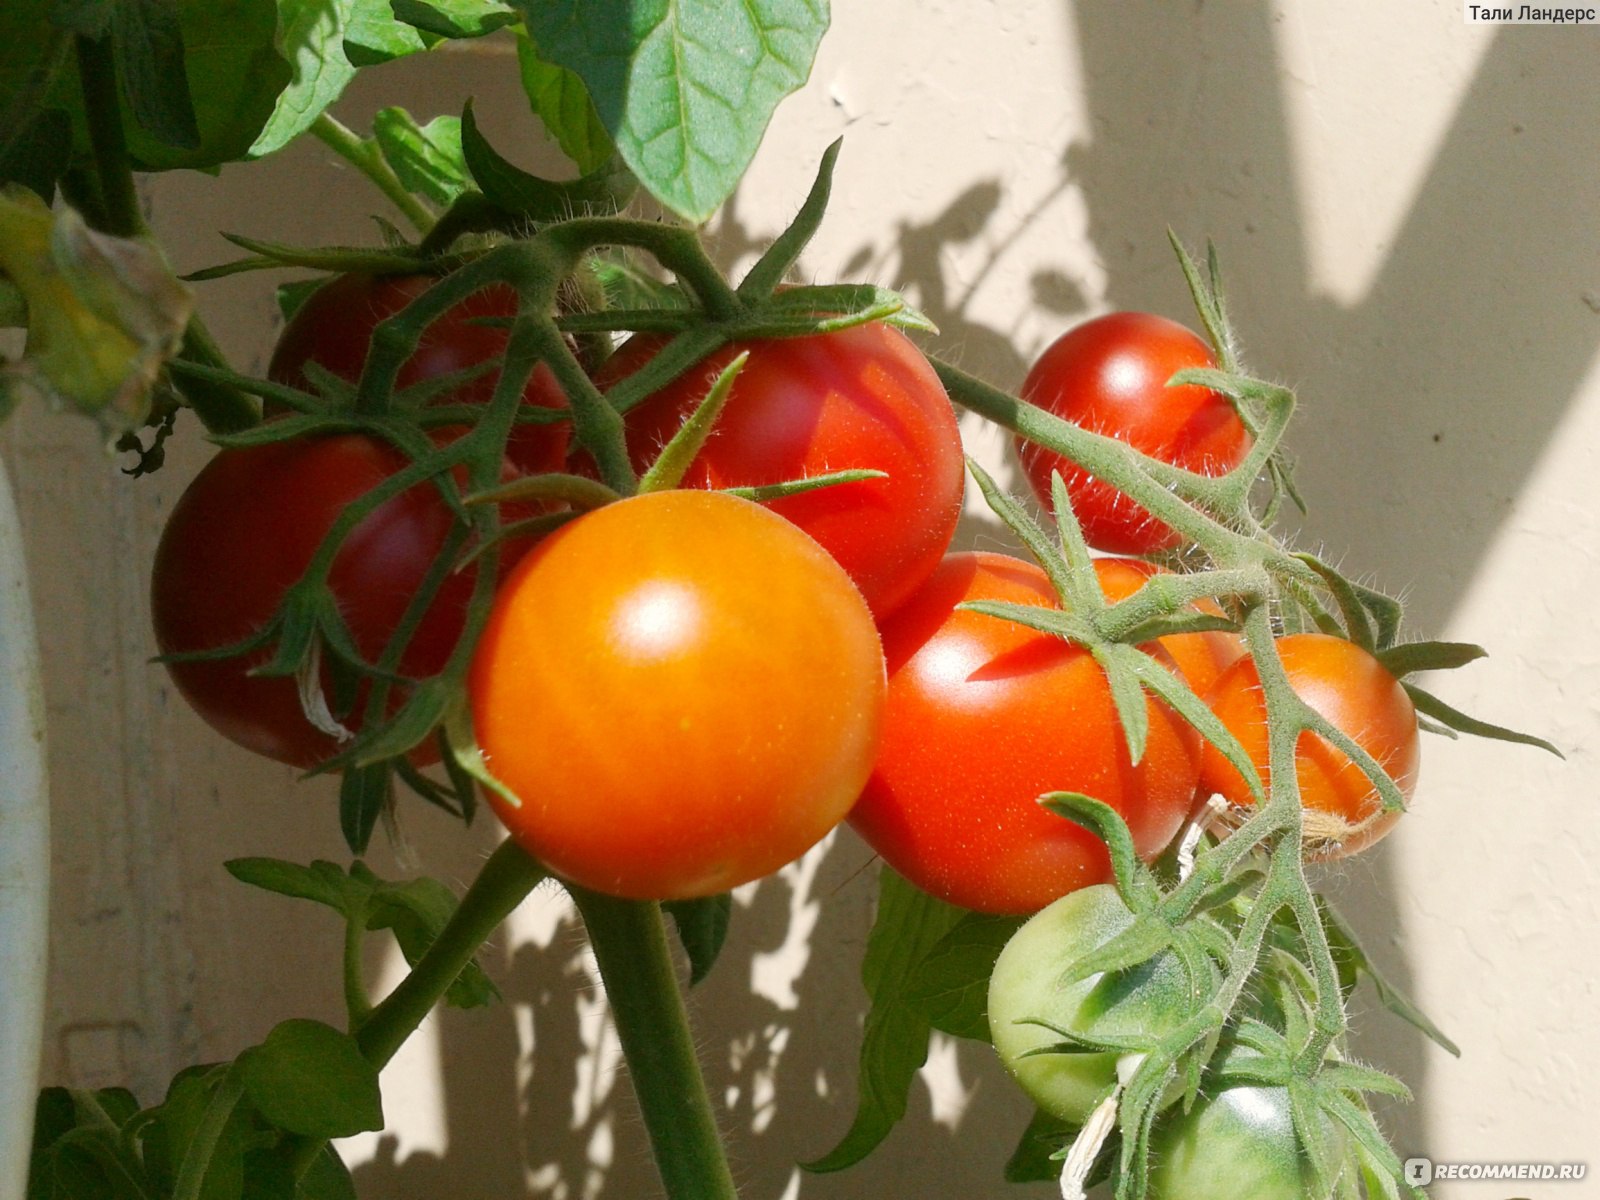 Фото ранних сортов помидор. Томат белый налив 241. Сорт томатов белый налив. Сорт помидор белый налив. Семена томат белый налив.